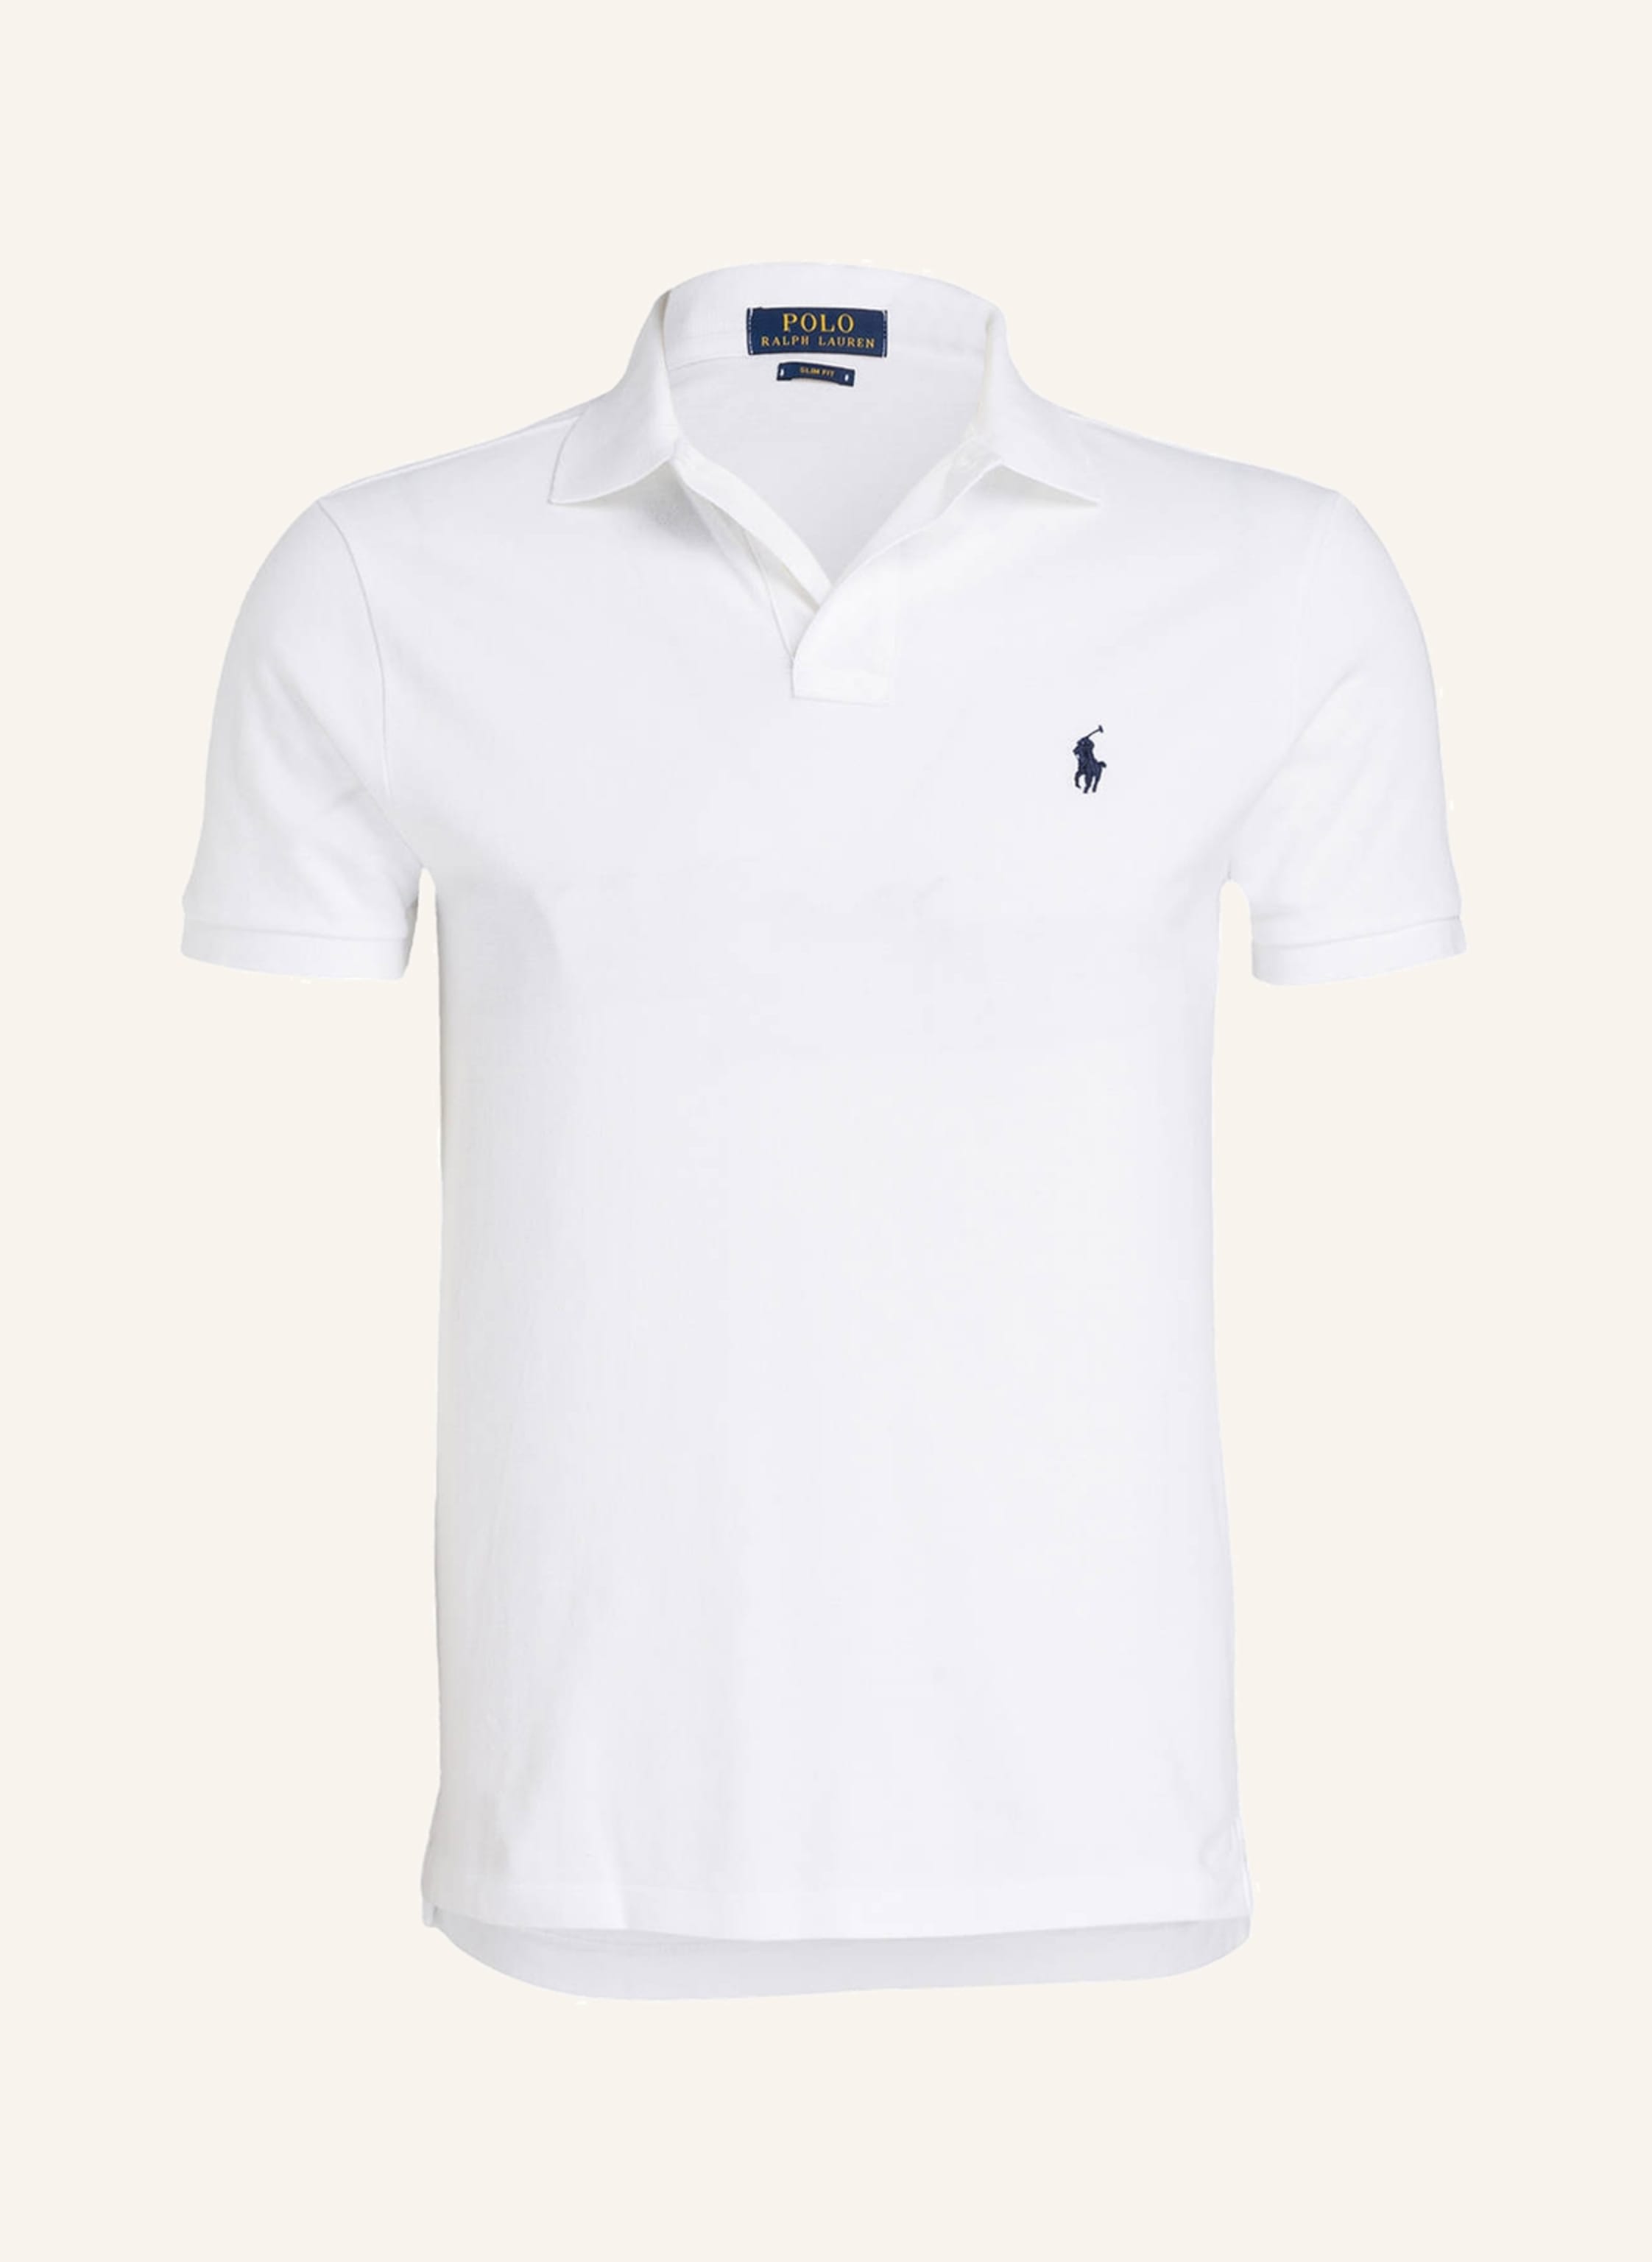 POLO RALPH LAUREN polo shirt slim fit white | Breuninger